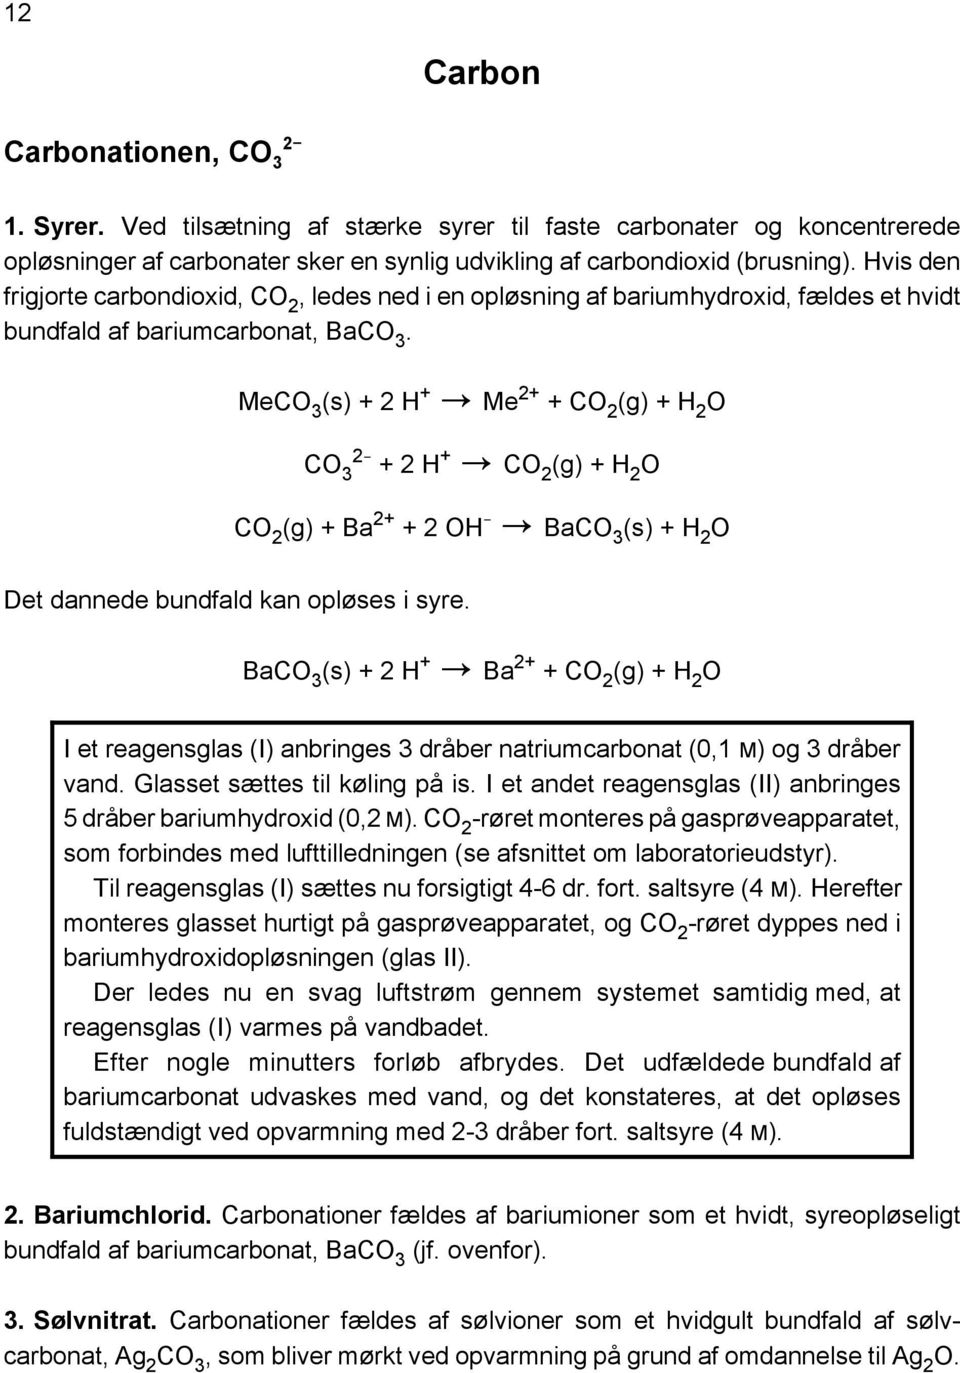 Udvalgte grundstoffers kemi i vandig opløsning - PDF Gratis download